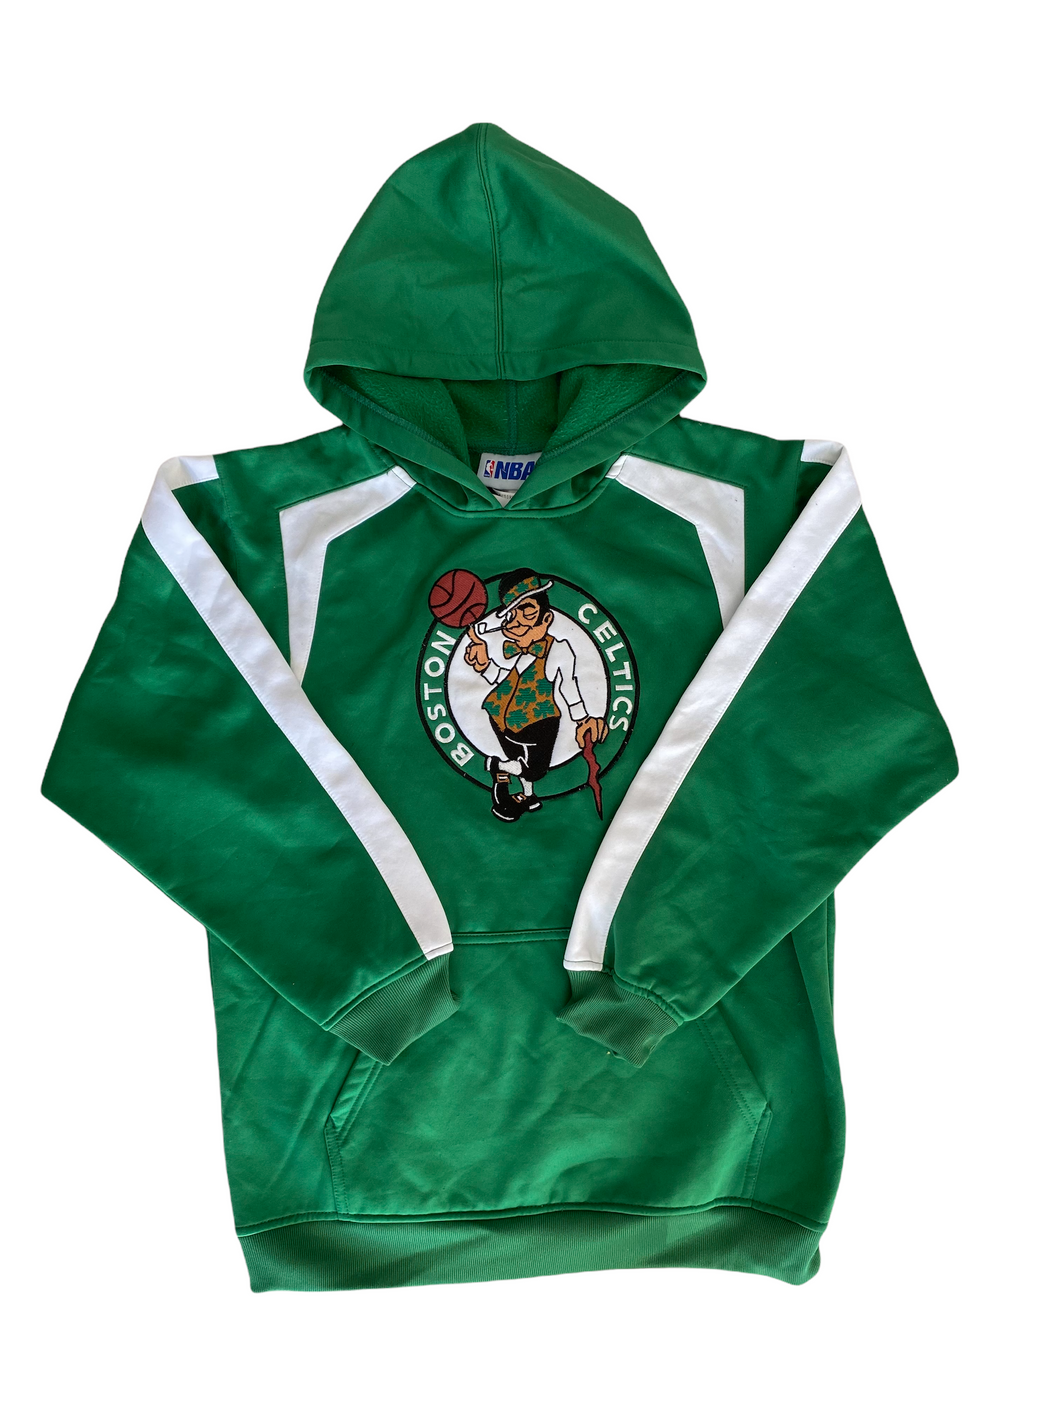 NBA hoodie green vintage 